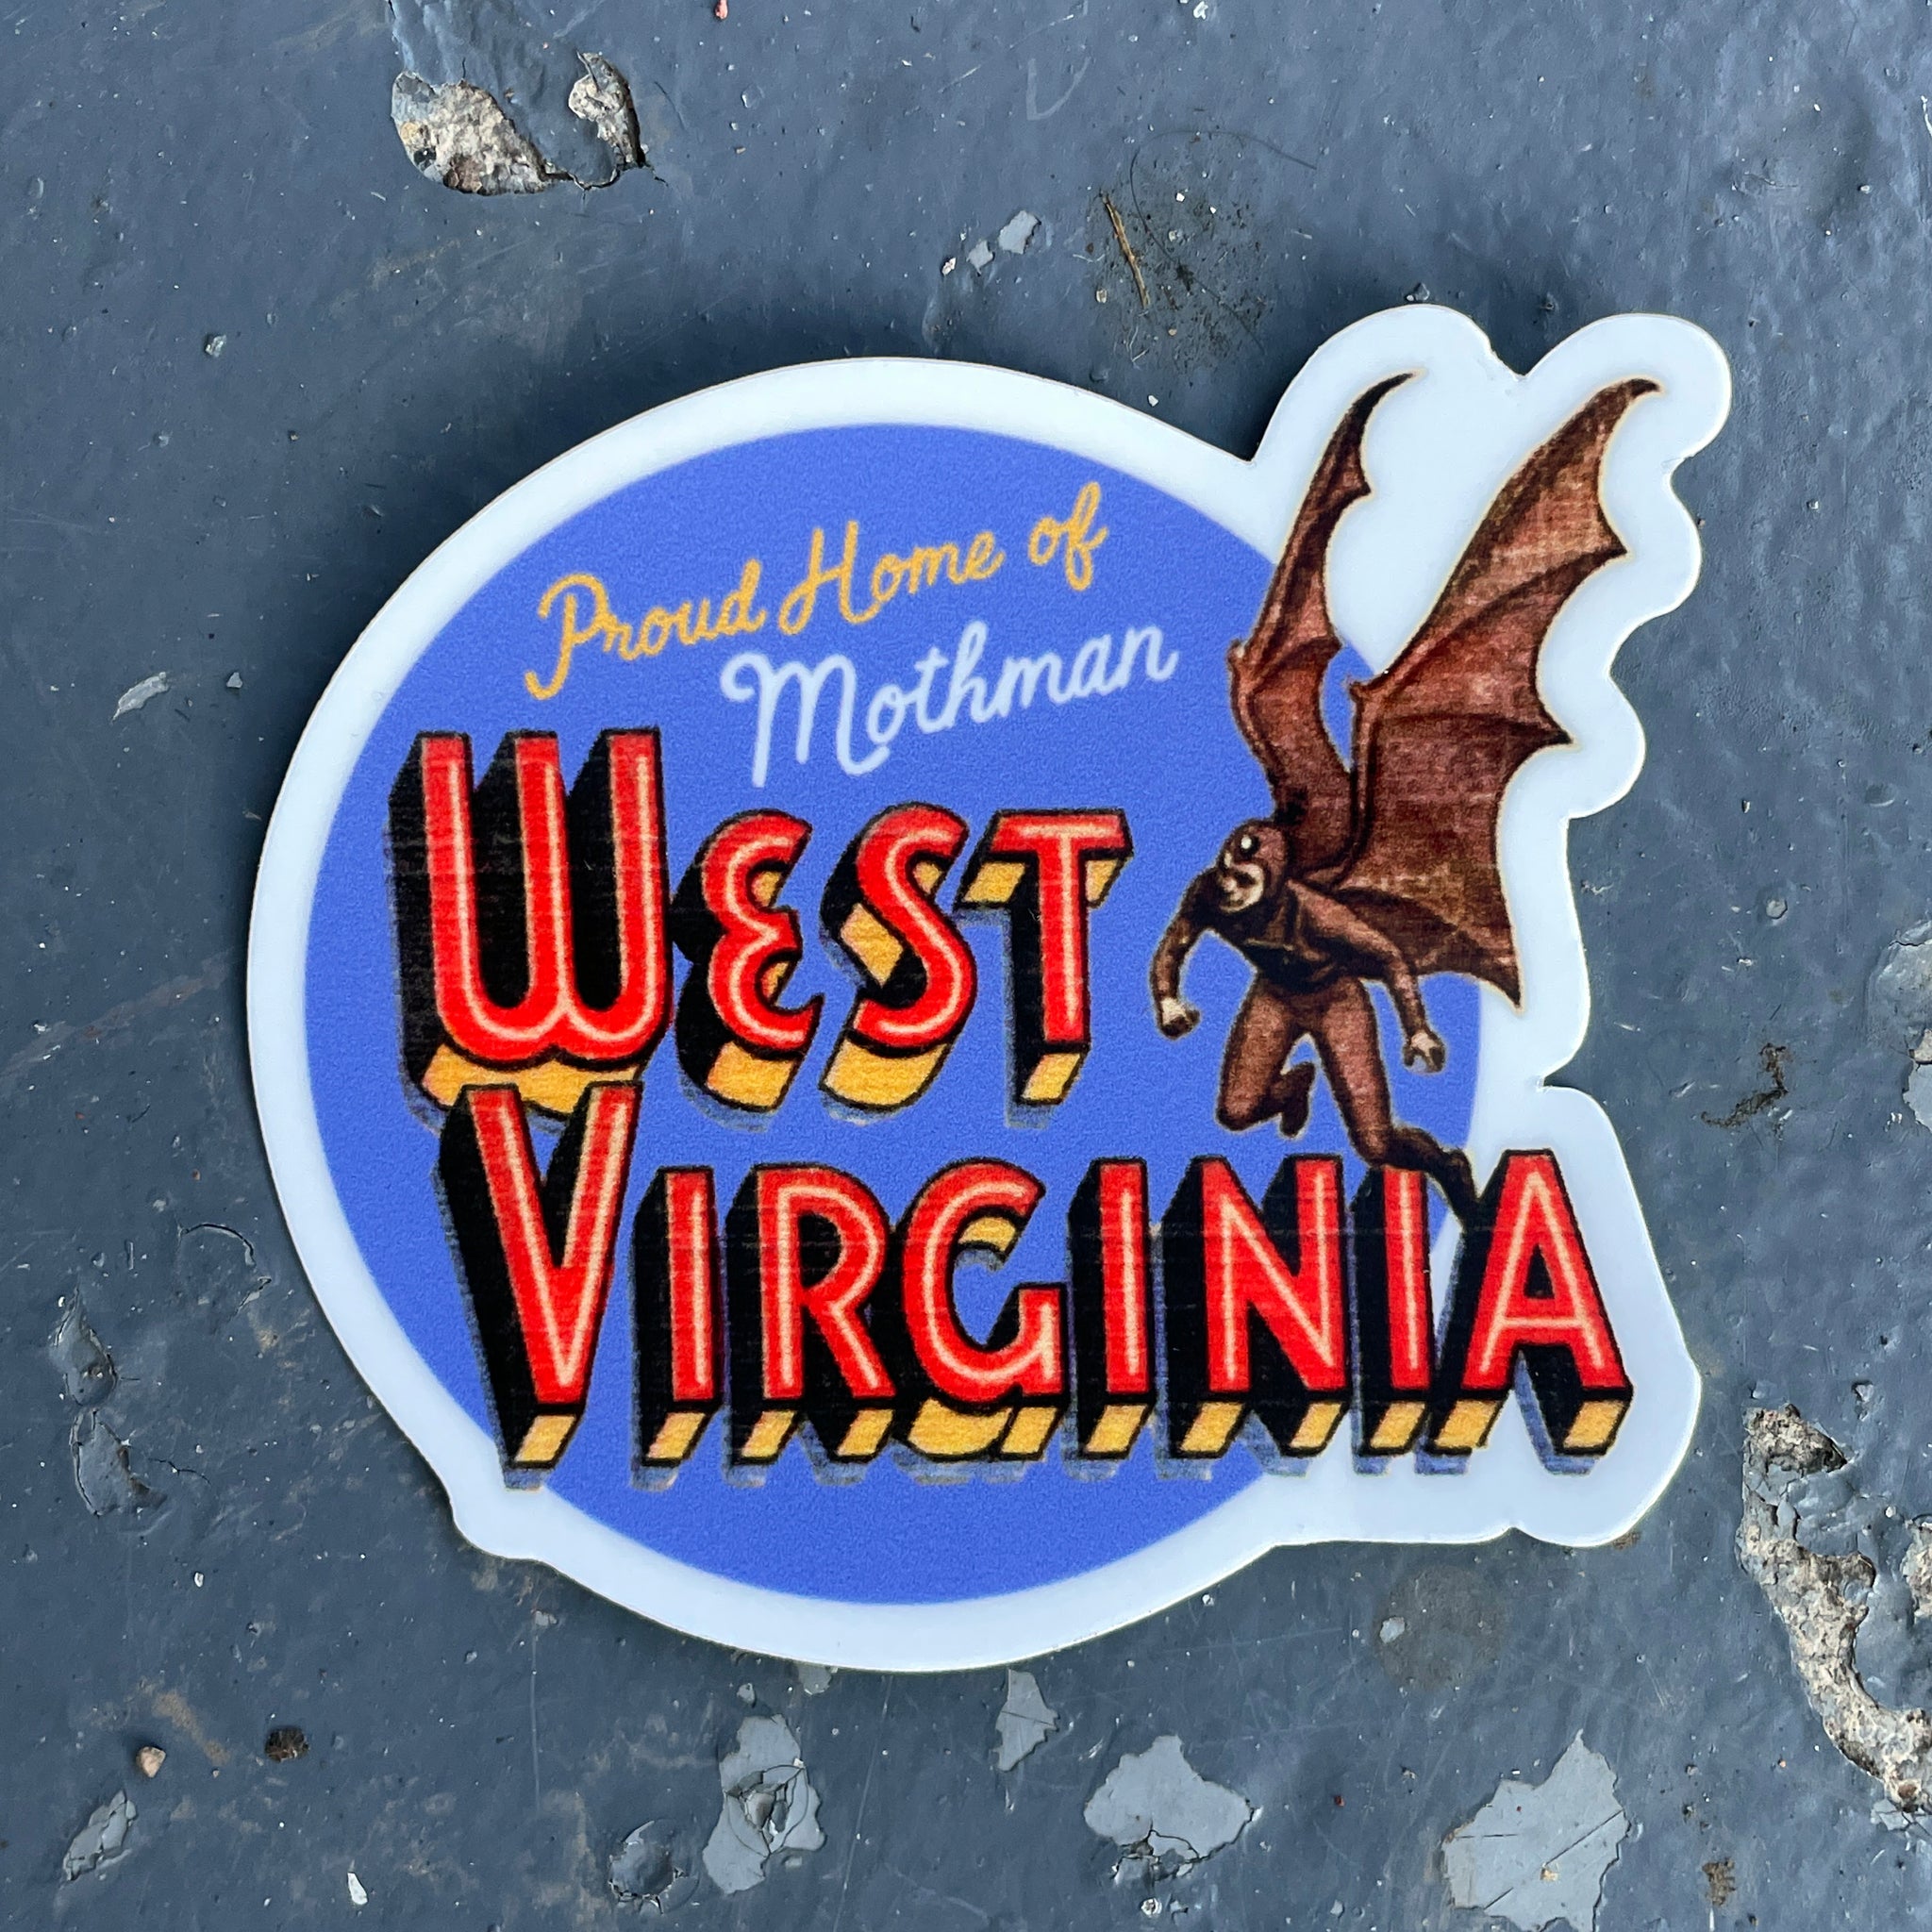 Mothman Monster - Sticker – Loving West Virginia